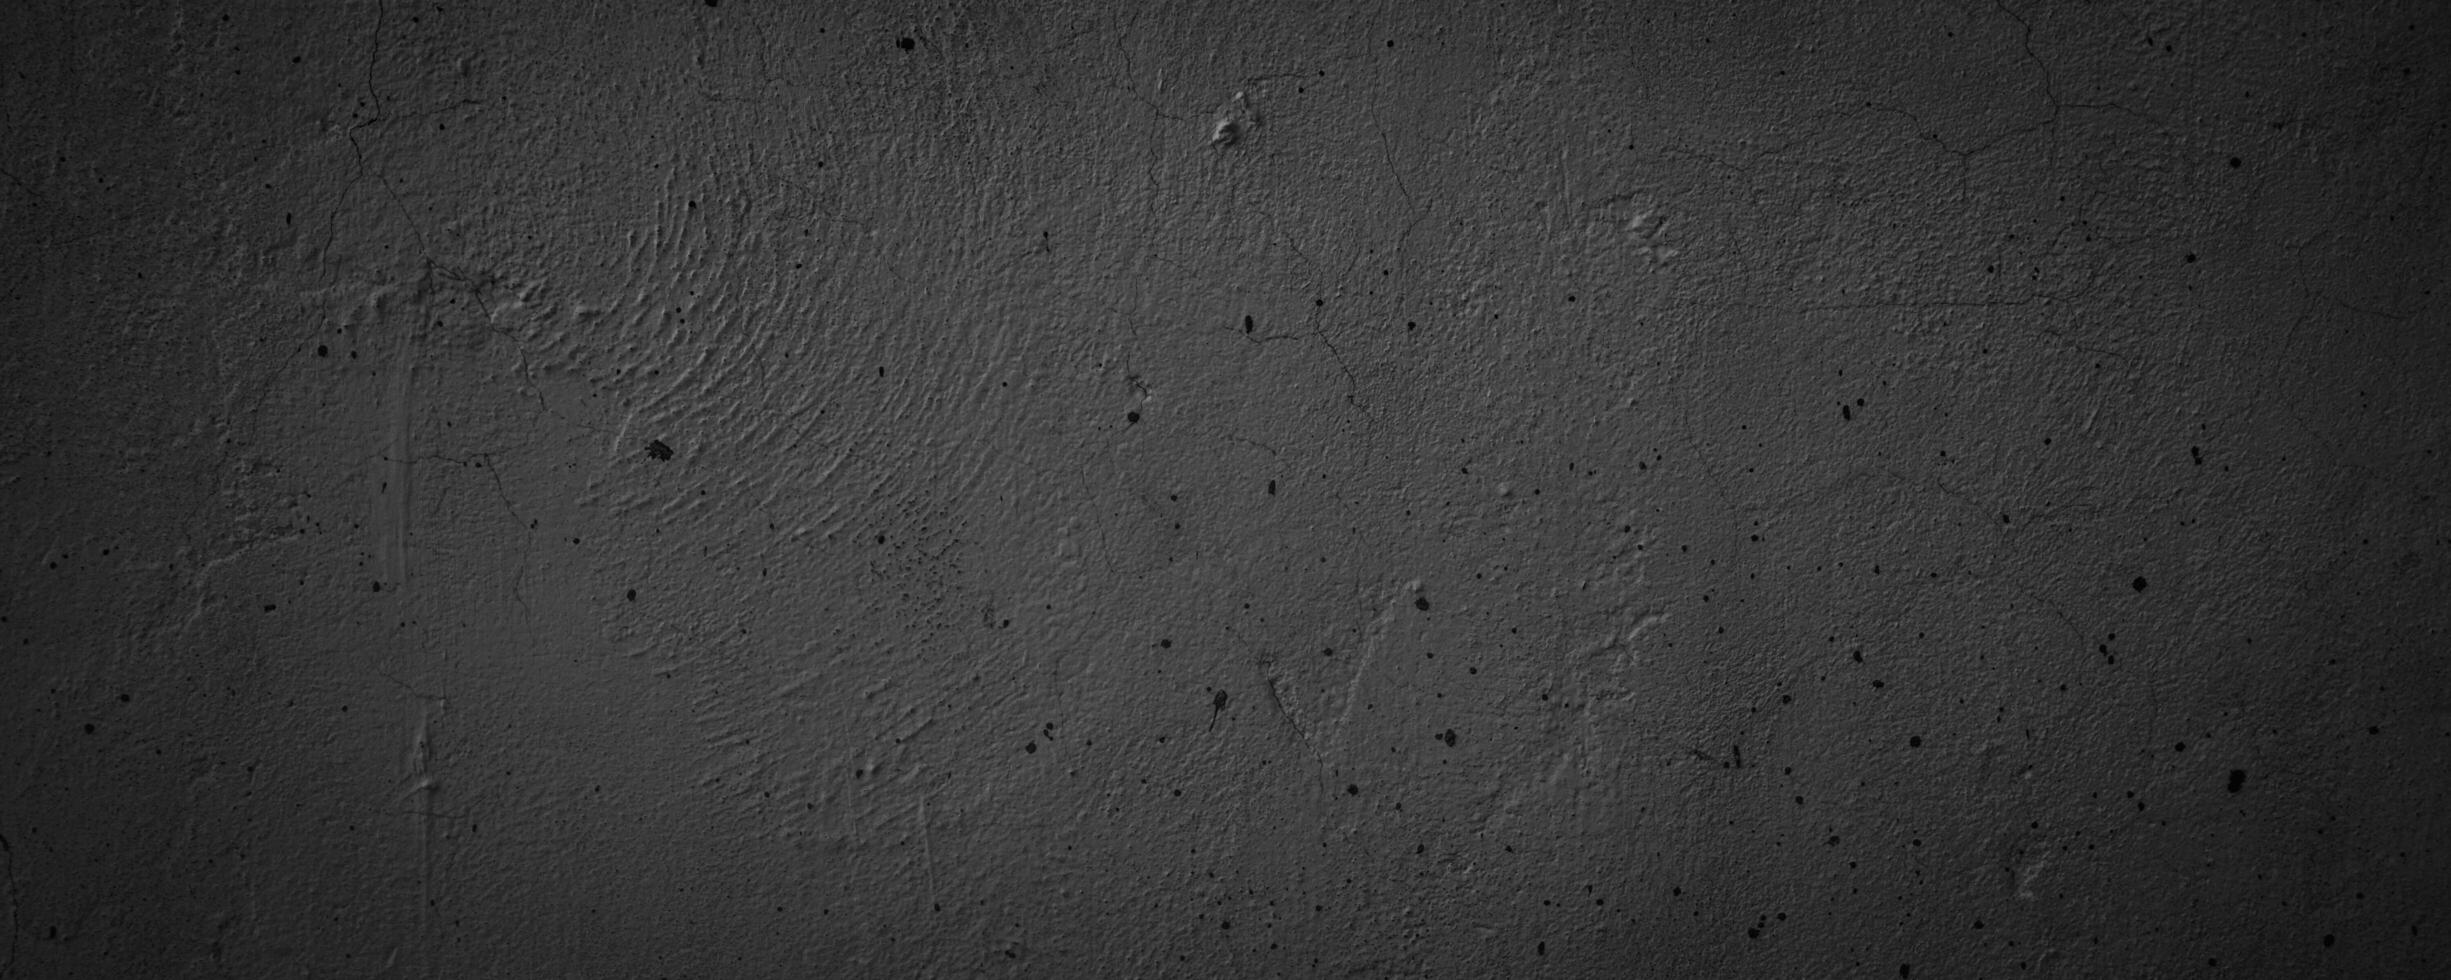 structuur abstract zwart grungy muur achtergrond foto